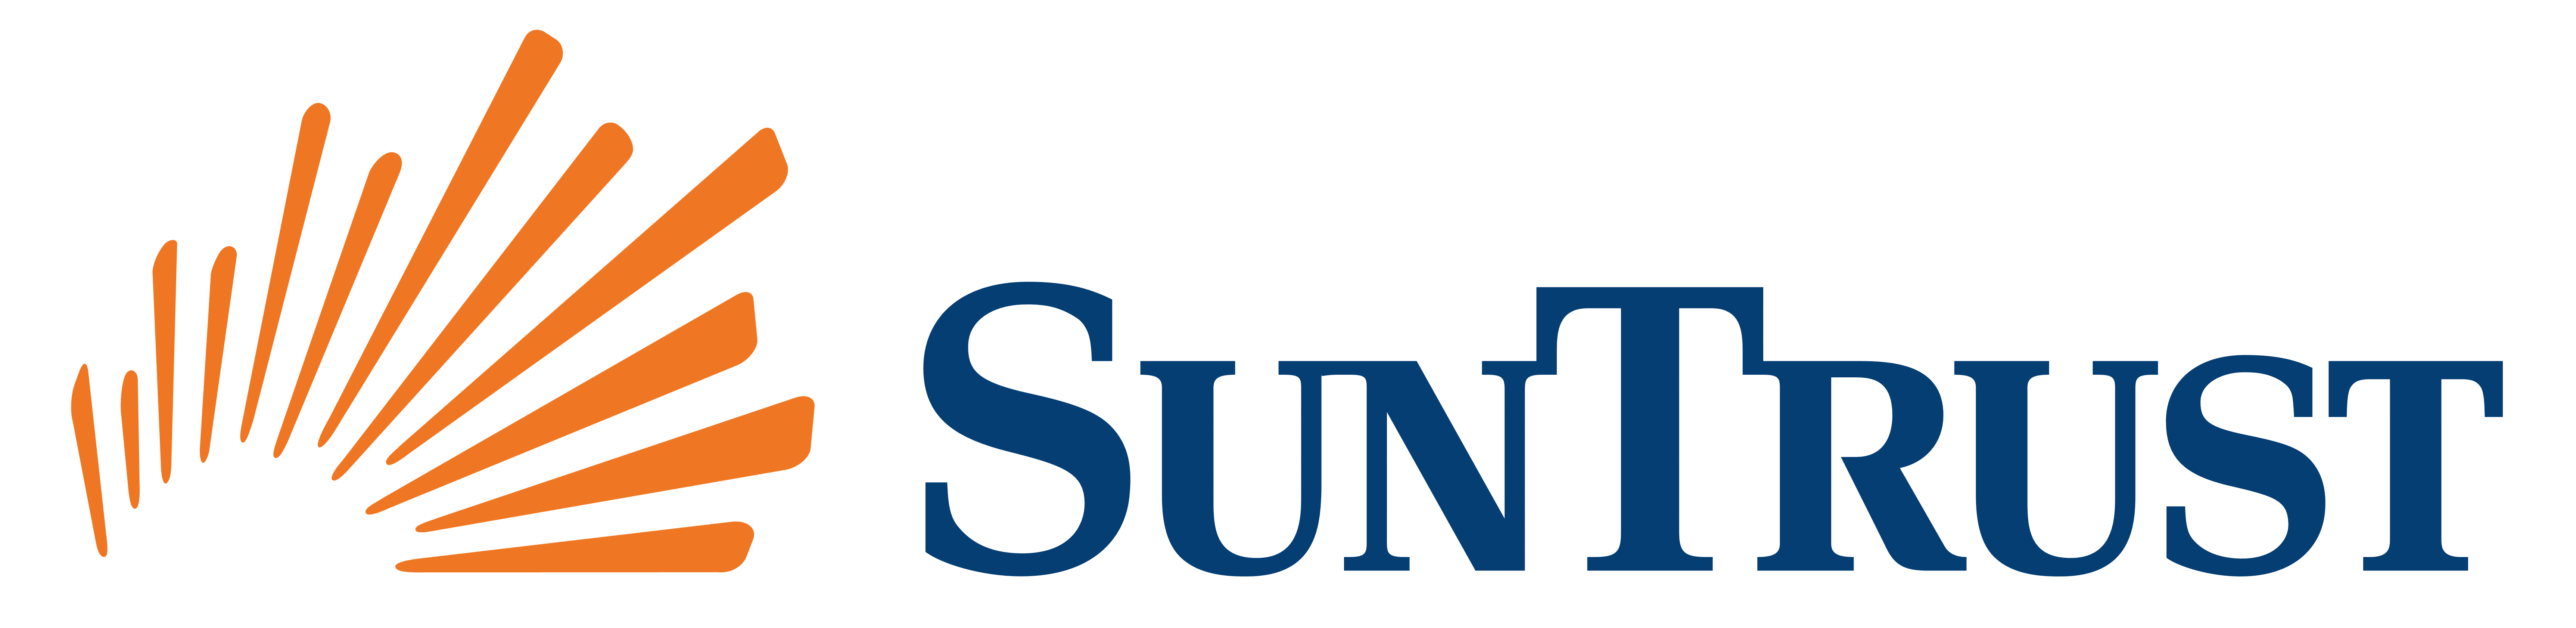 SunTrust Bank logo, logotype